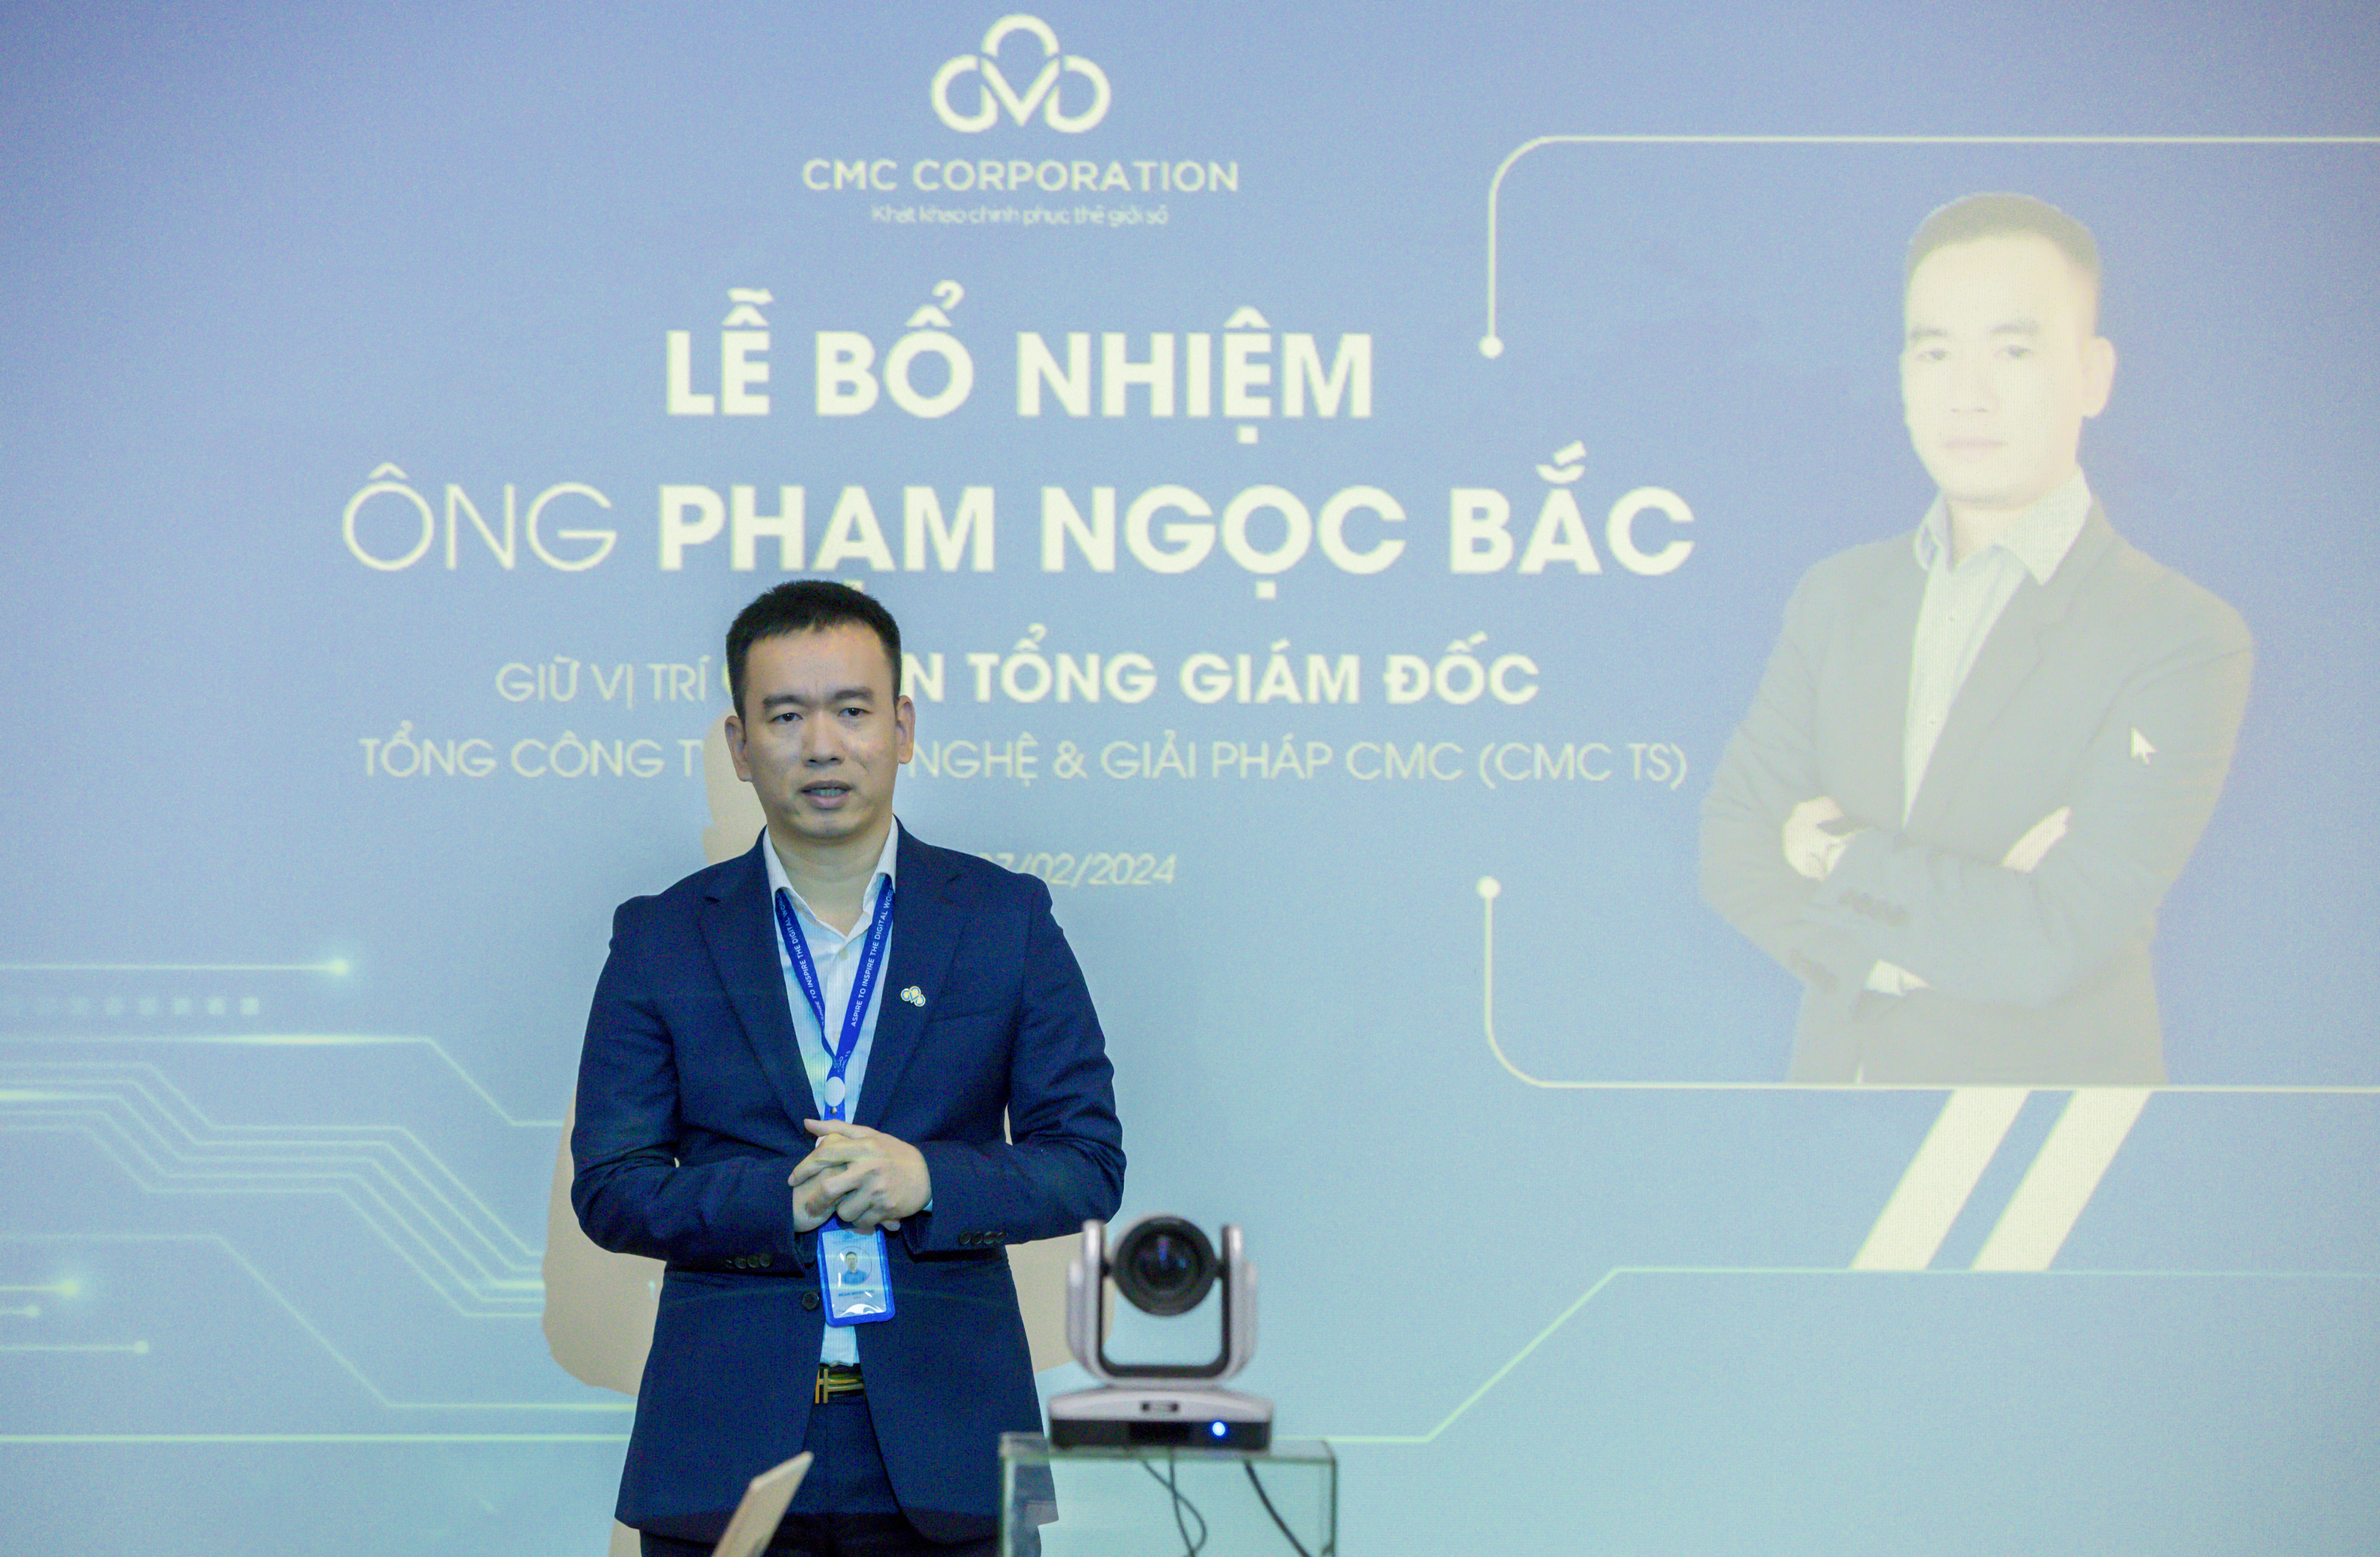 Ông Phạm Ngọc Bắc phát biểu tại lễ nhận Quyết định bổ nhiệm quyền Tổng giám đốc CMC TS.